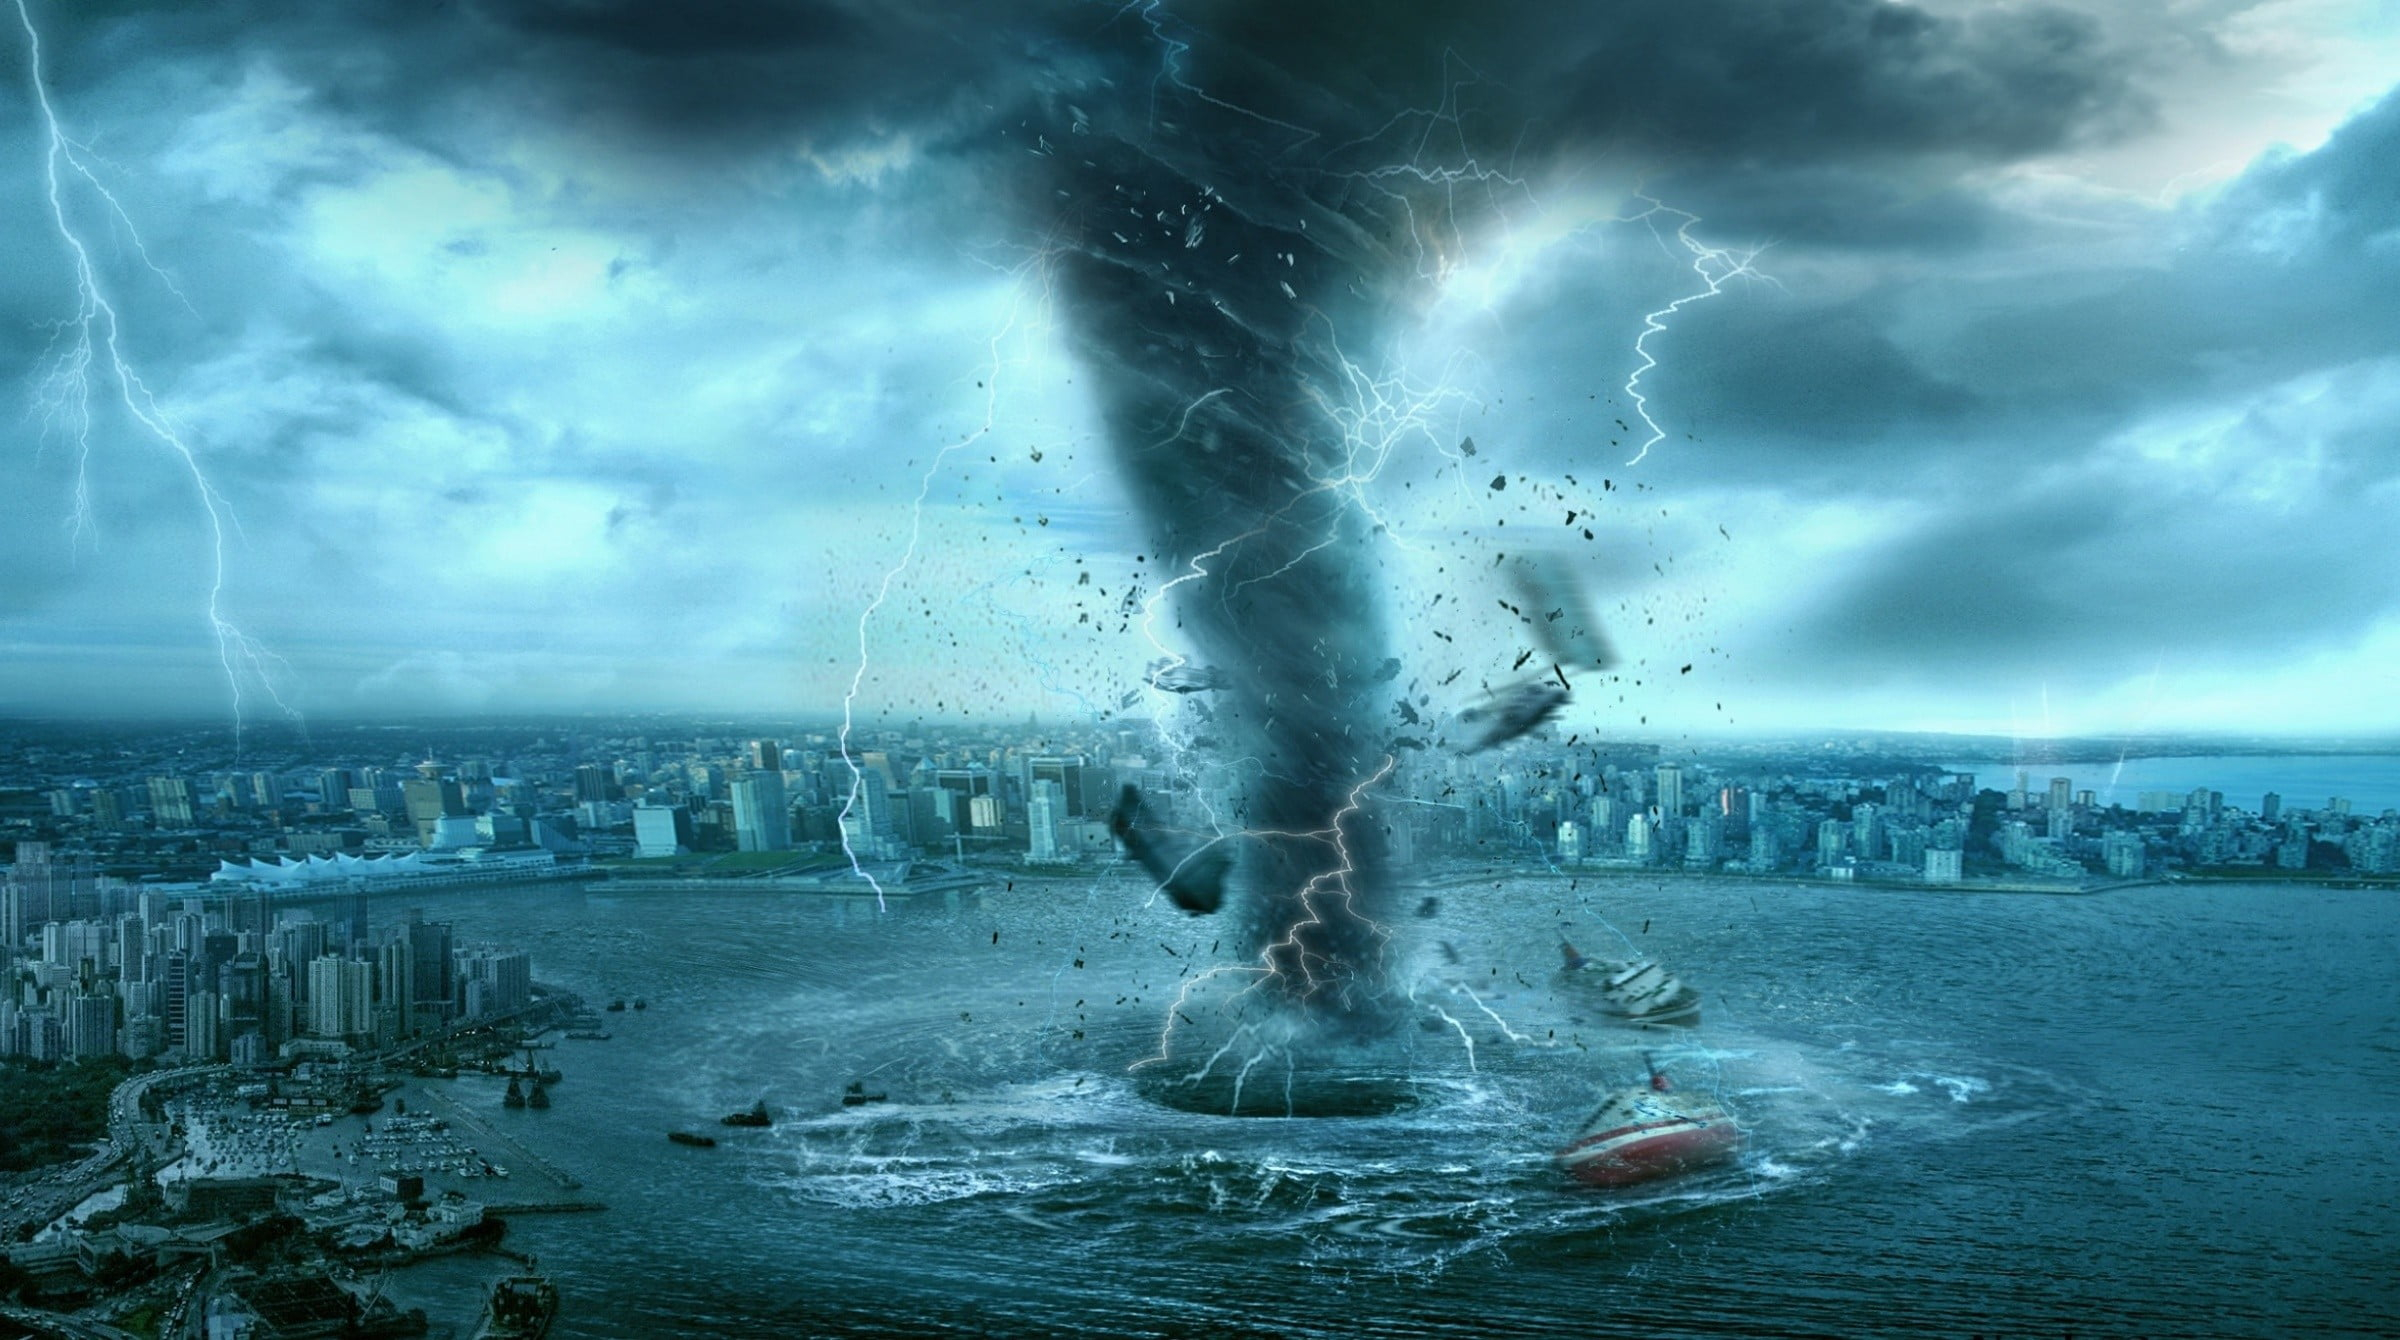 2400x1340 Hurricane in the body of water digital wallpaper, tornado, digital art, cityscape, sea HD wallpaper